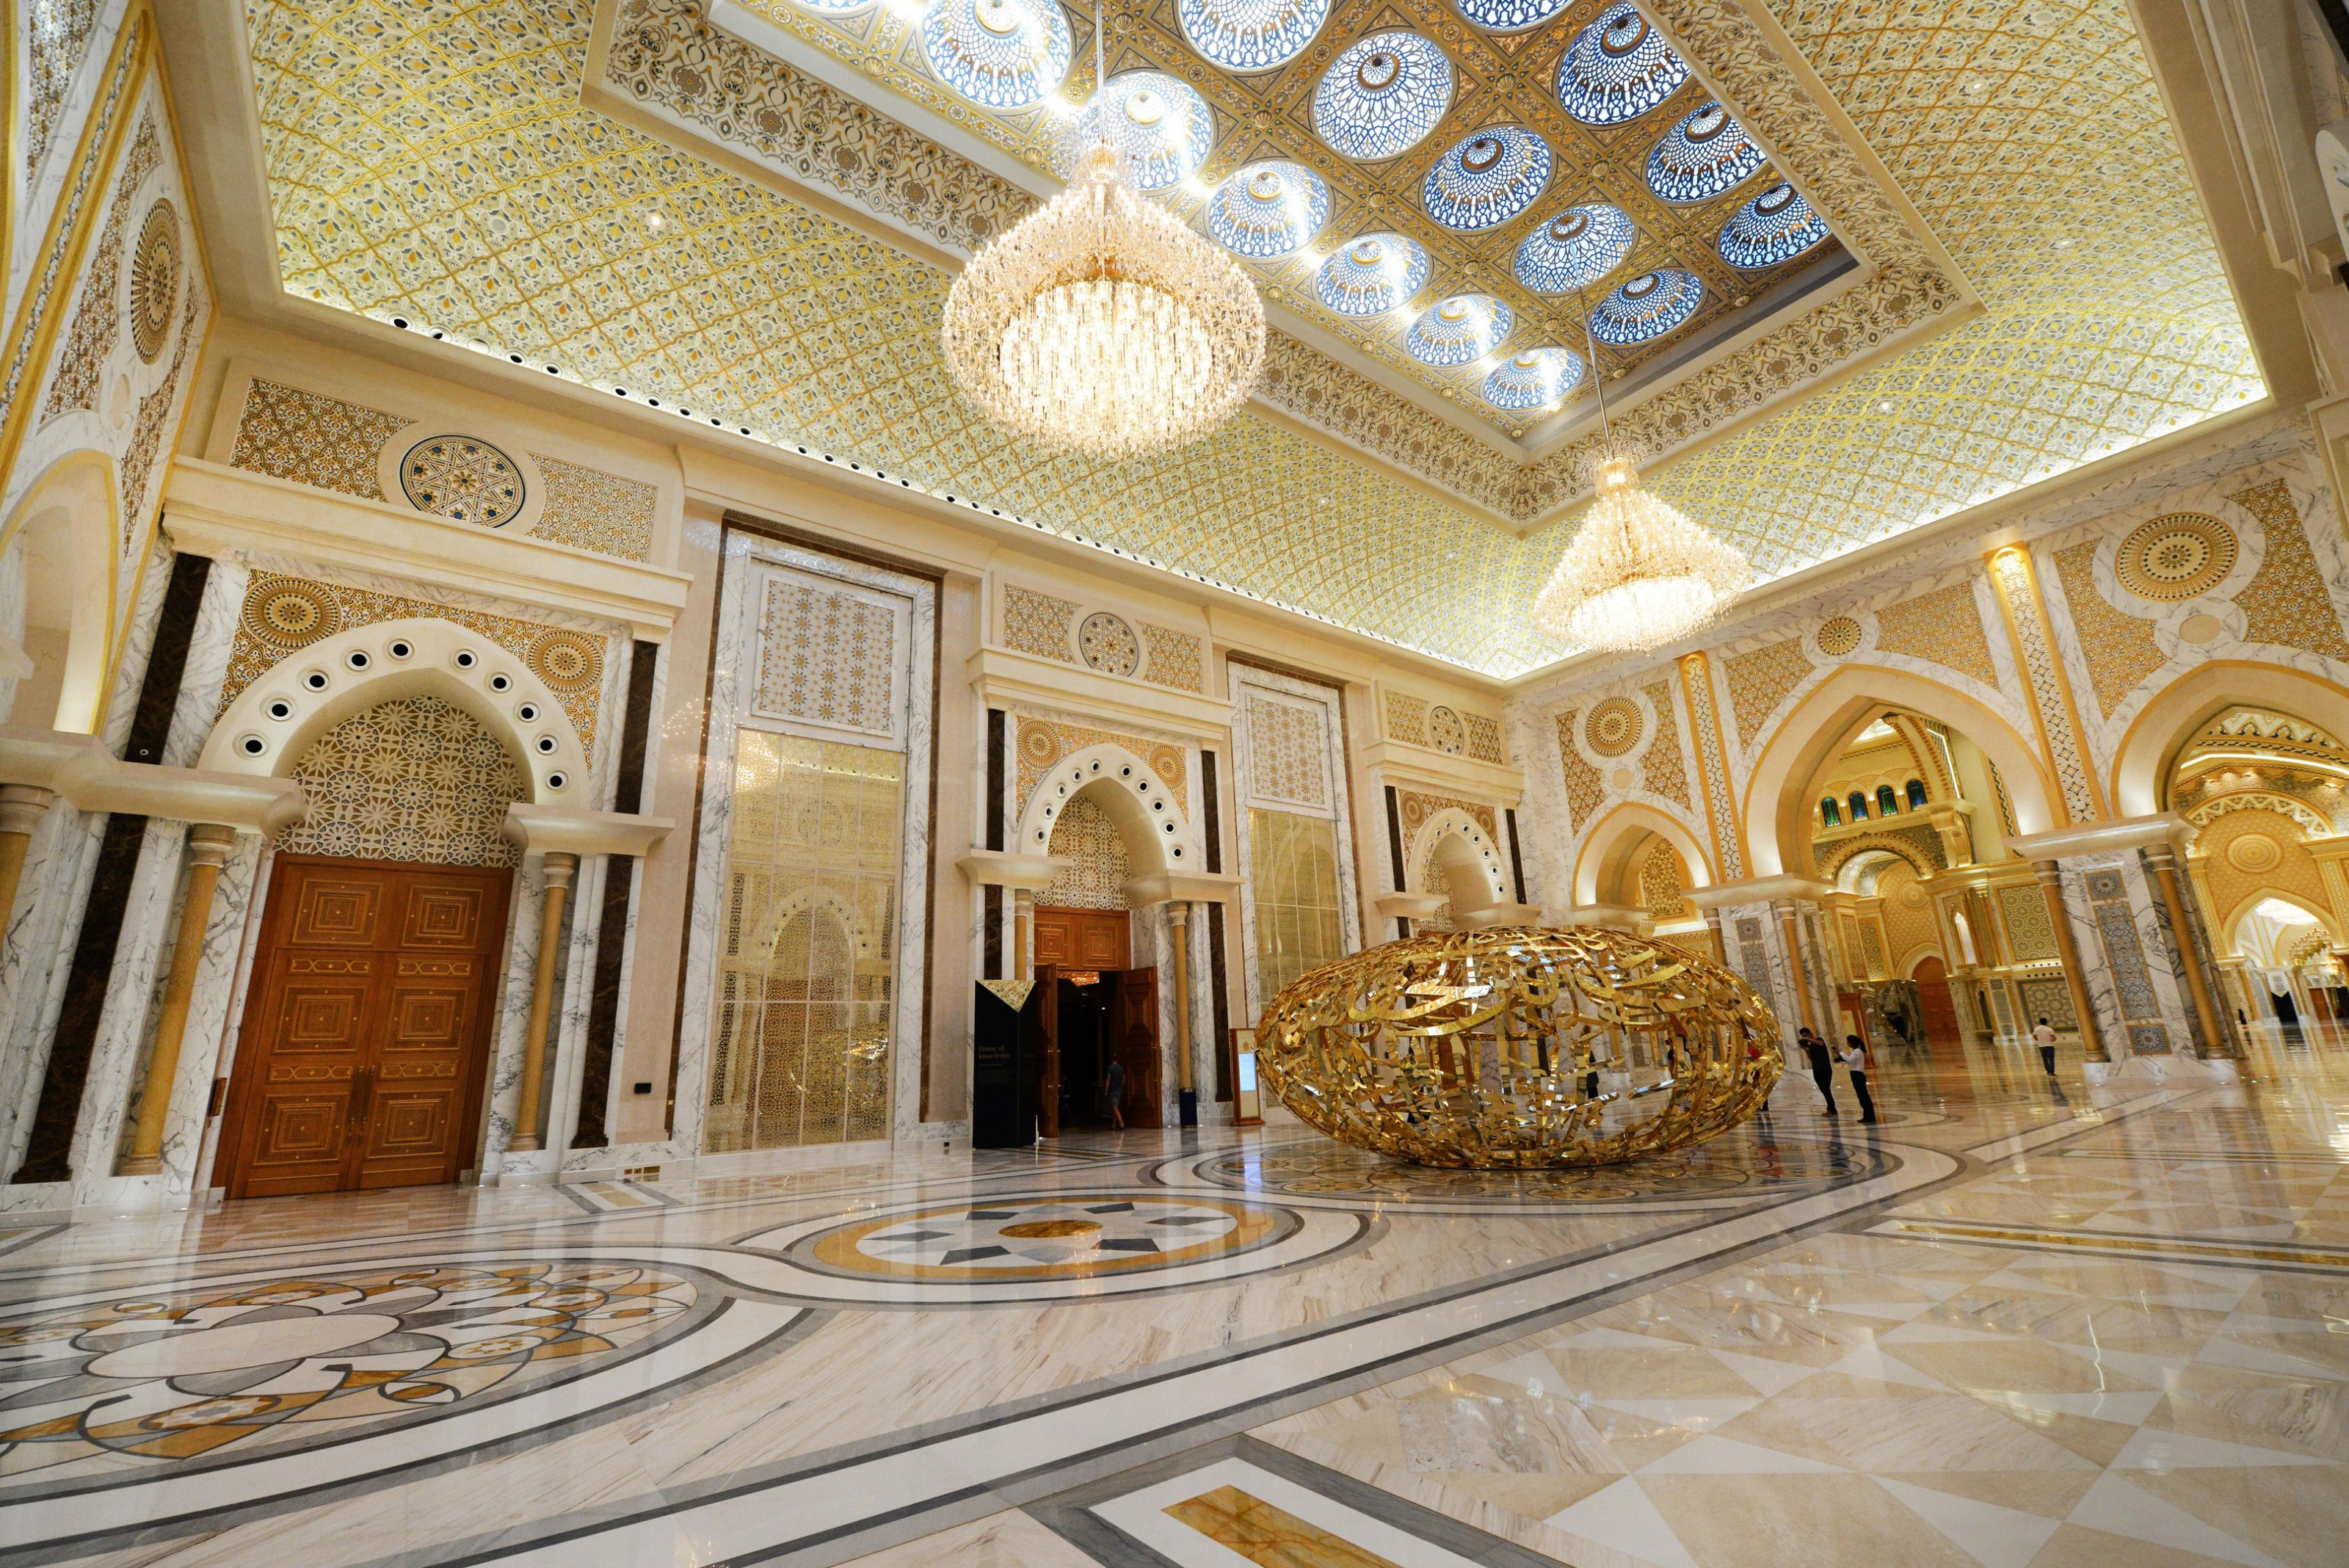 1788 комнат, 257 ванных, и все в золоте: как выглядят роскошные дворцы шейхов только, долларов, шейха, построен, дворец, состояние, оценивается, своих, самых, прямо, которые, личное, который, является, султана, человек, более, главной, гостей, можно